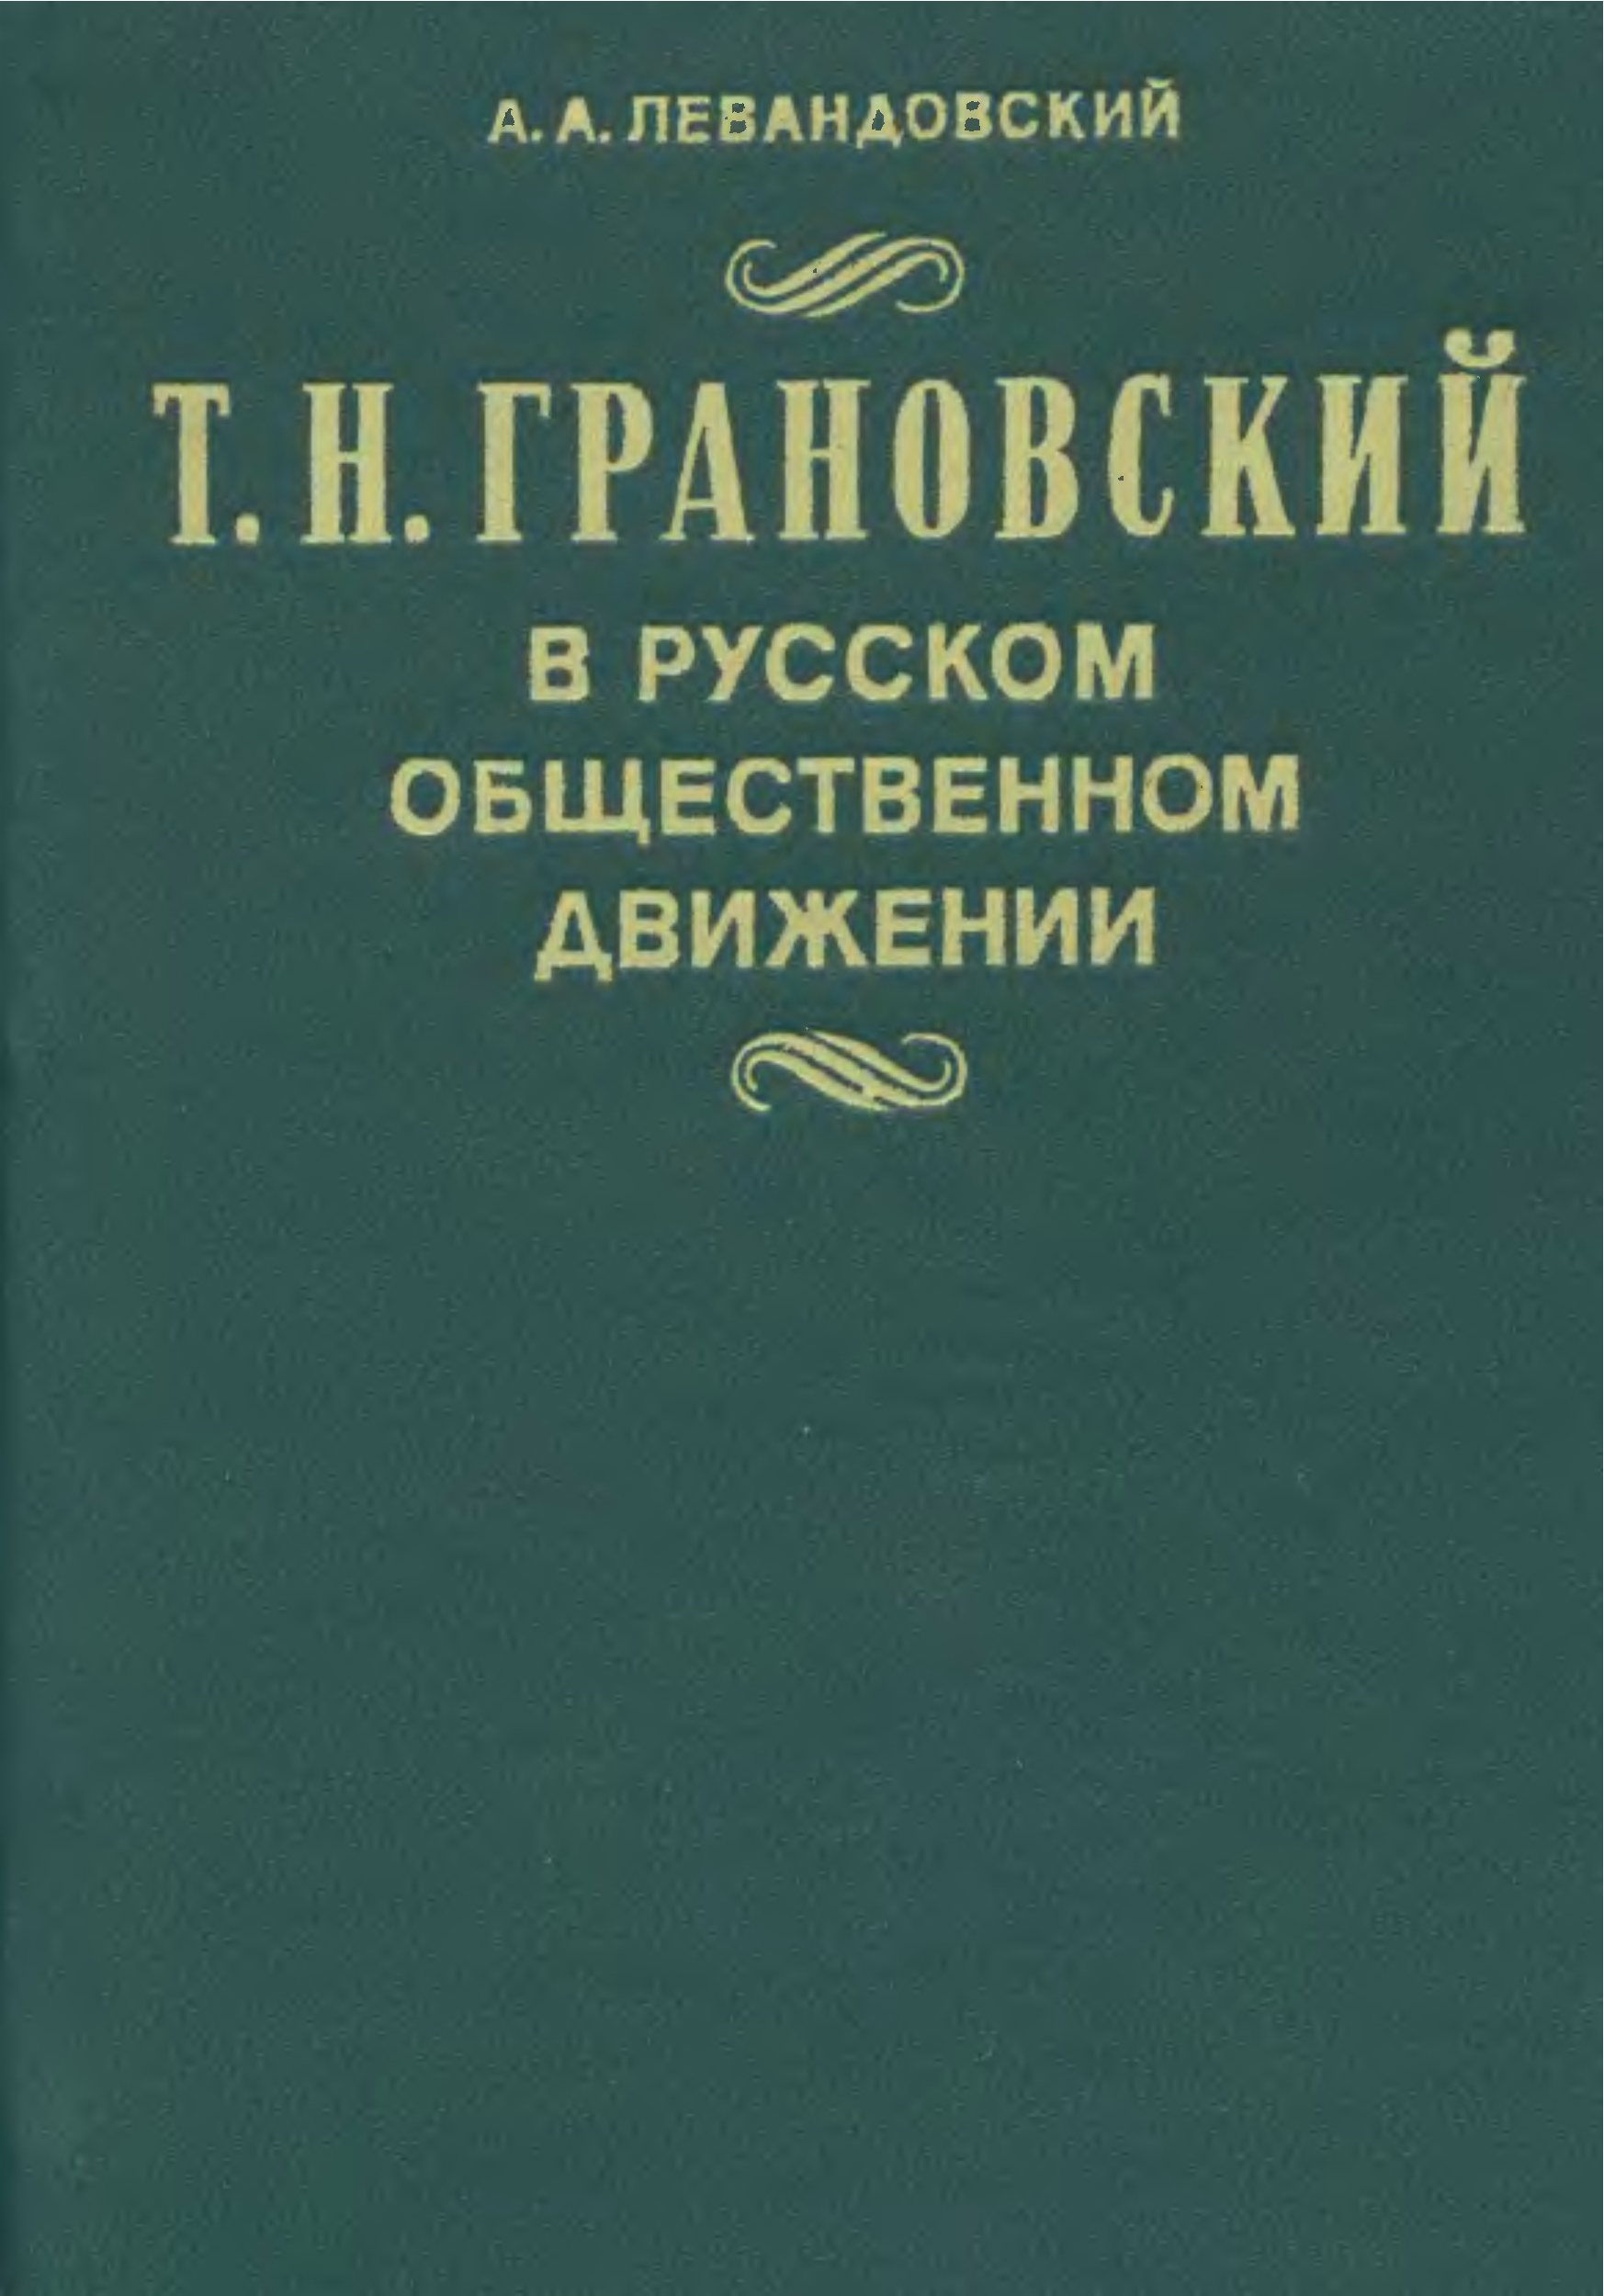 Грановский т.н. книги